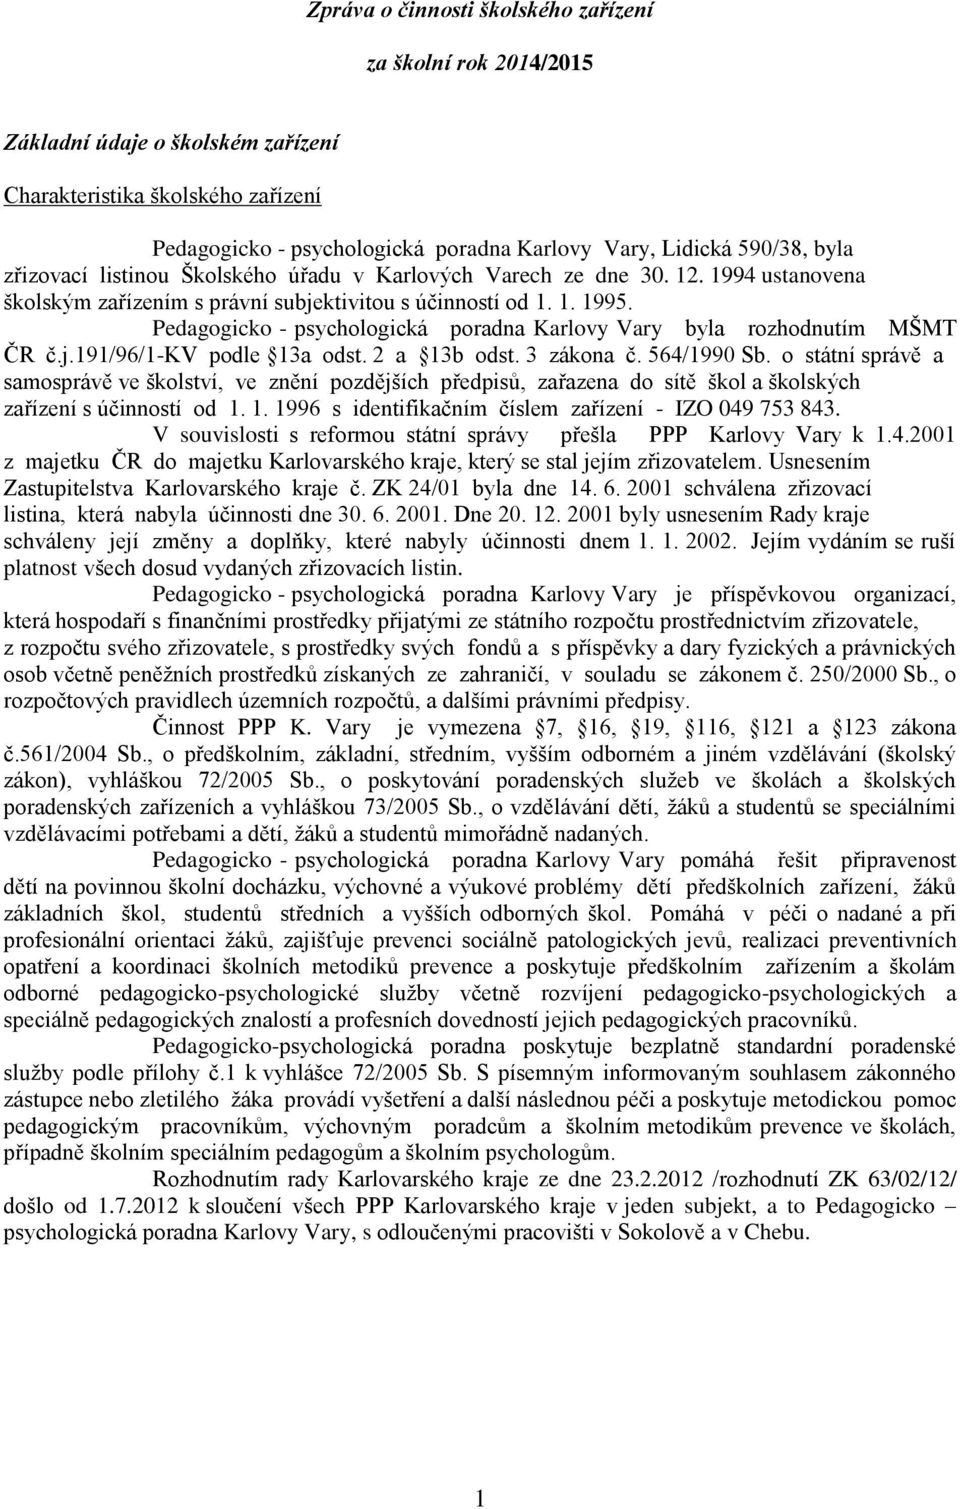 Pedagogicko - psychologická poradna Karlovy Vary byla rozhodnutím MŠMT ČR č.j.191/96/1-kv podle 13a odst. 2 a 13b odst. 3 zákona č. 564/1990 Sb.